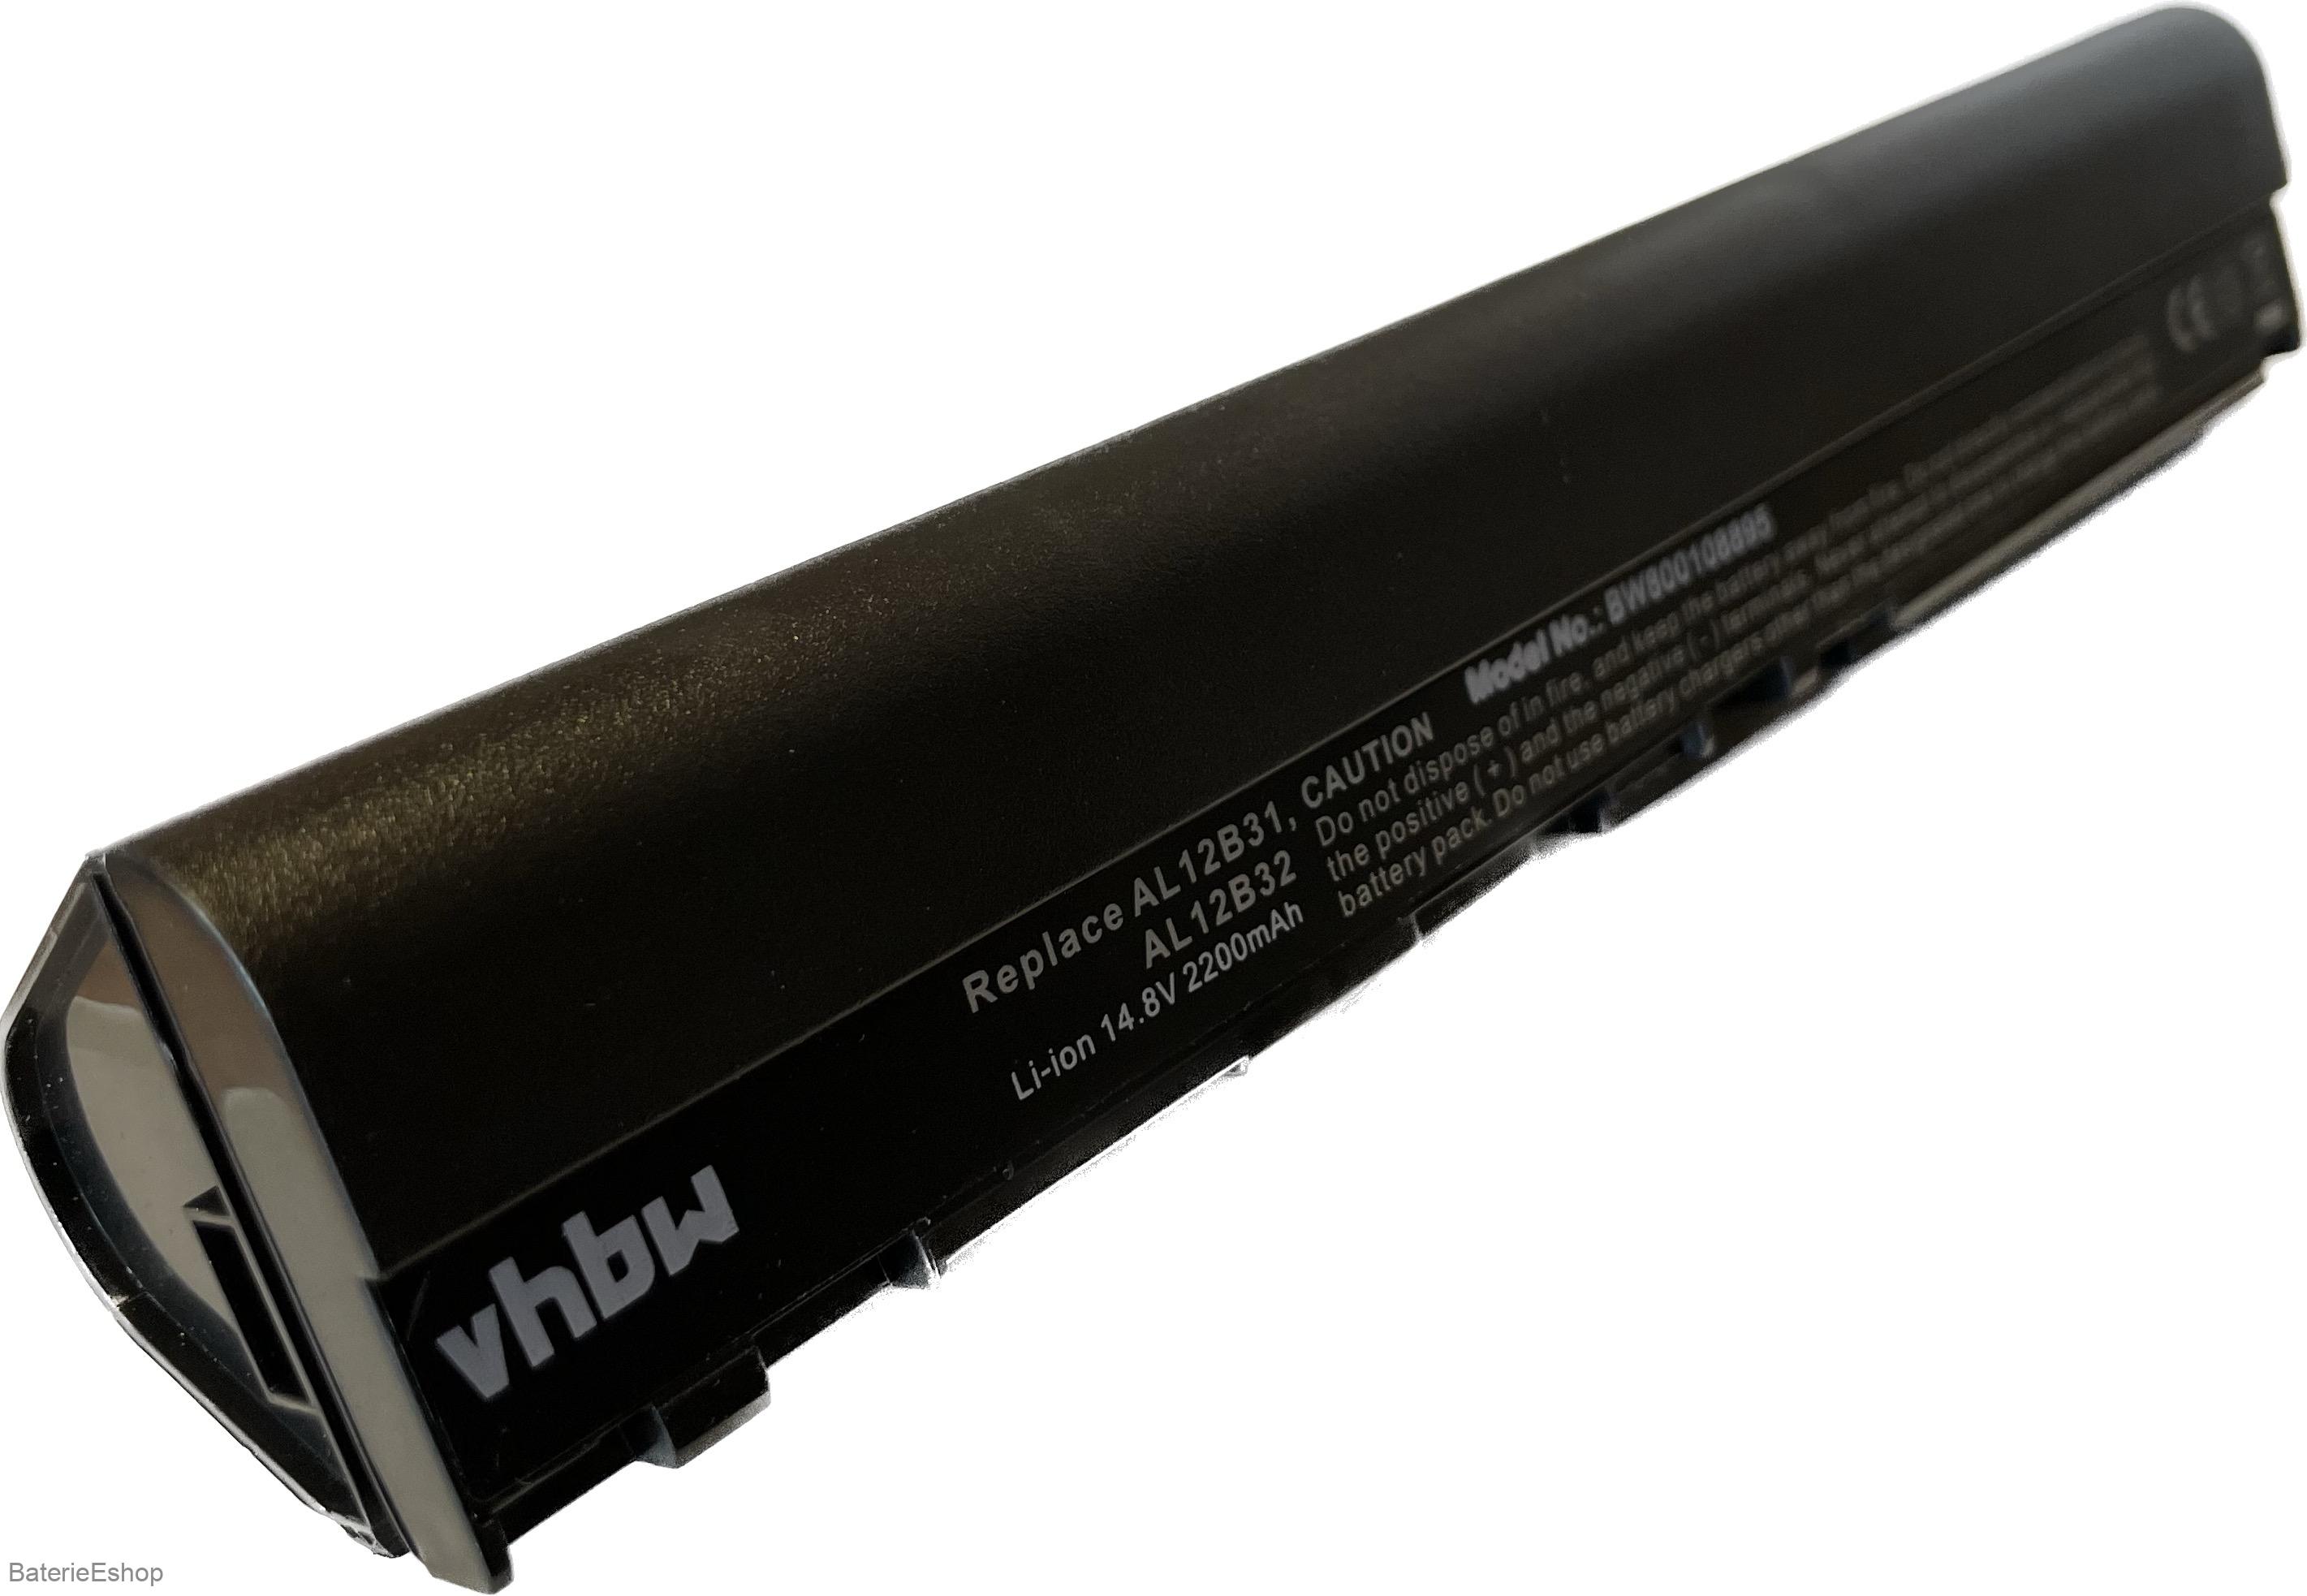 VHBW bateria pre Acer Aspire V5-131 14.8V, 2200mAh , 8895 - neoriginálna 